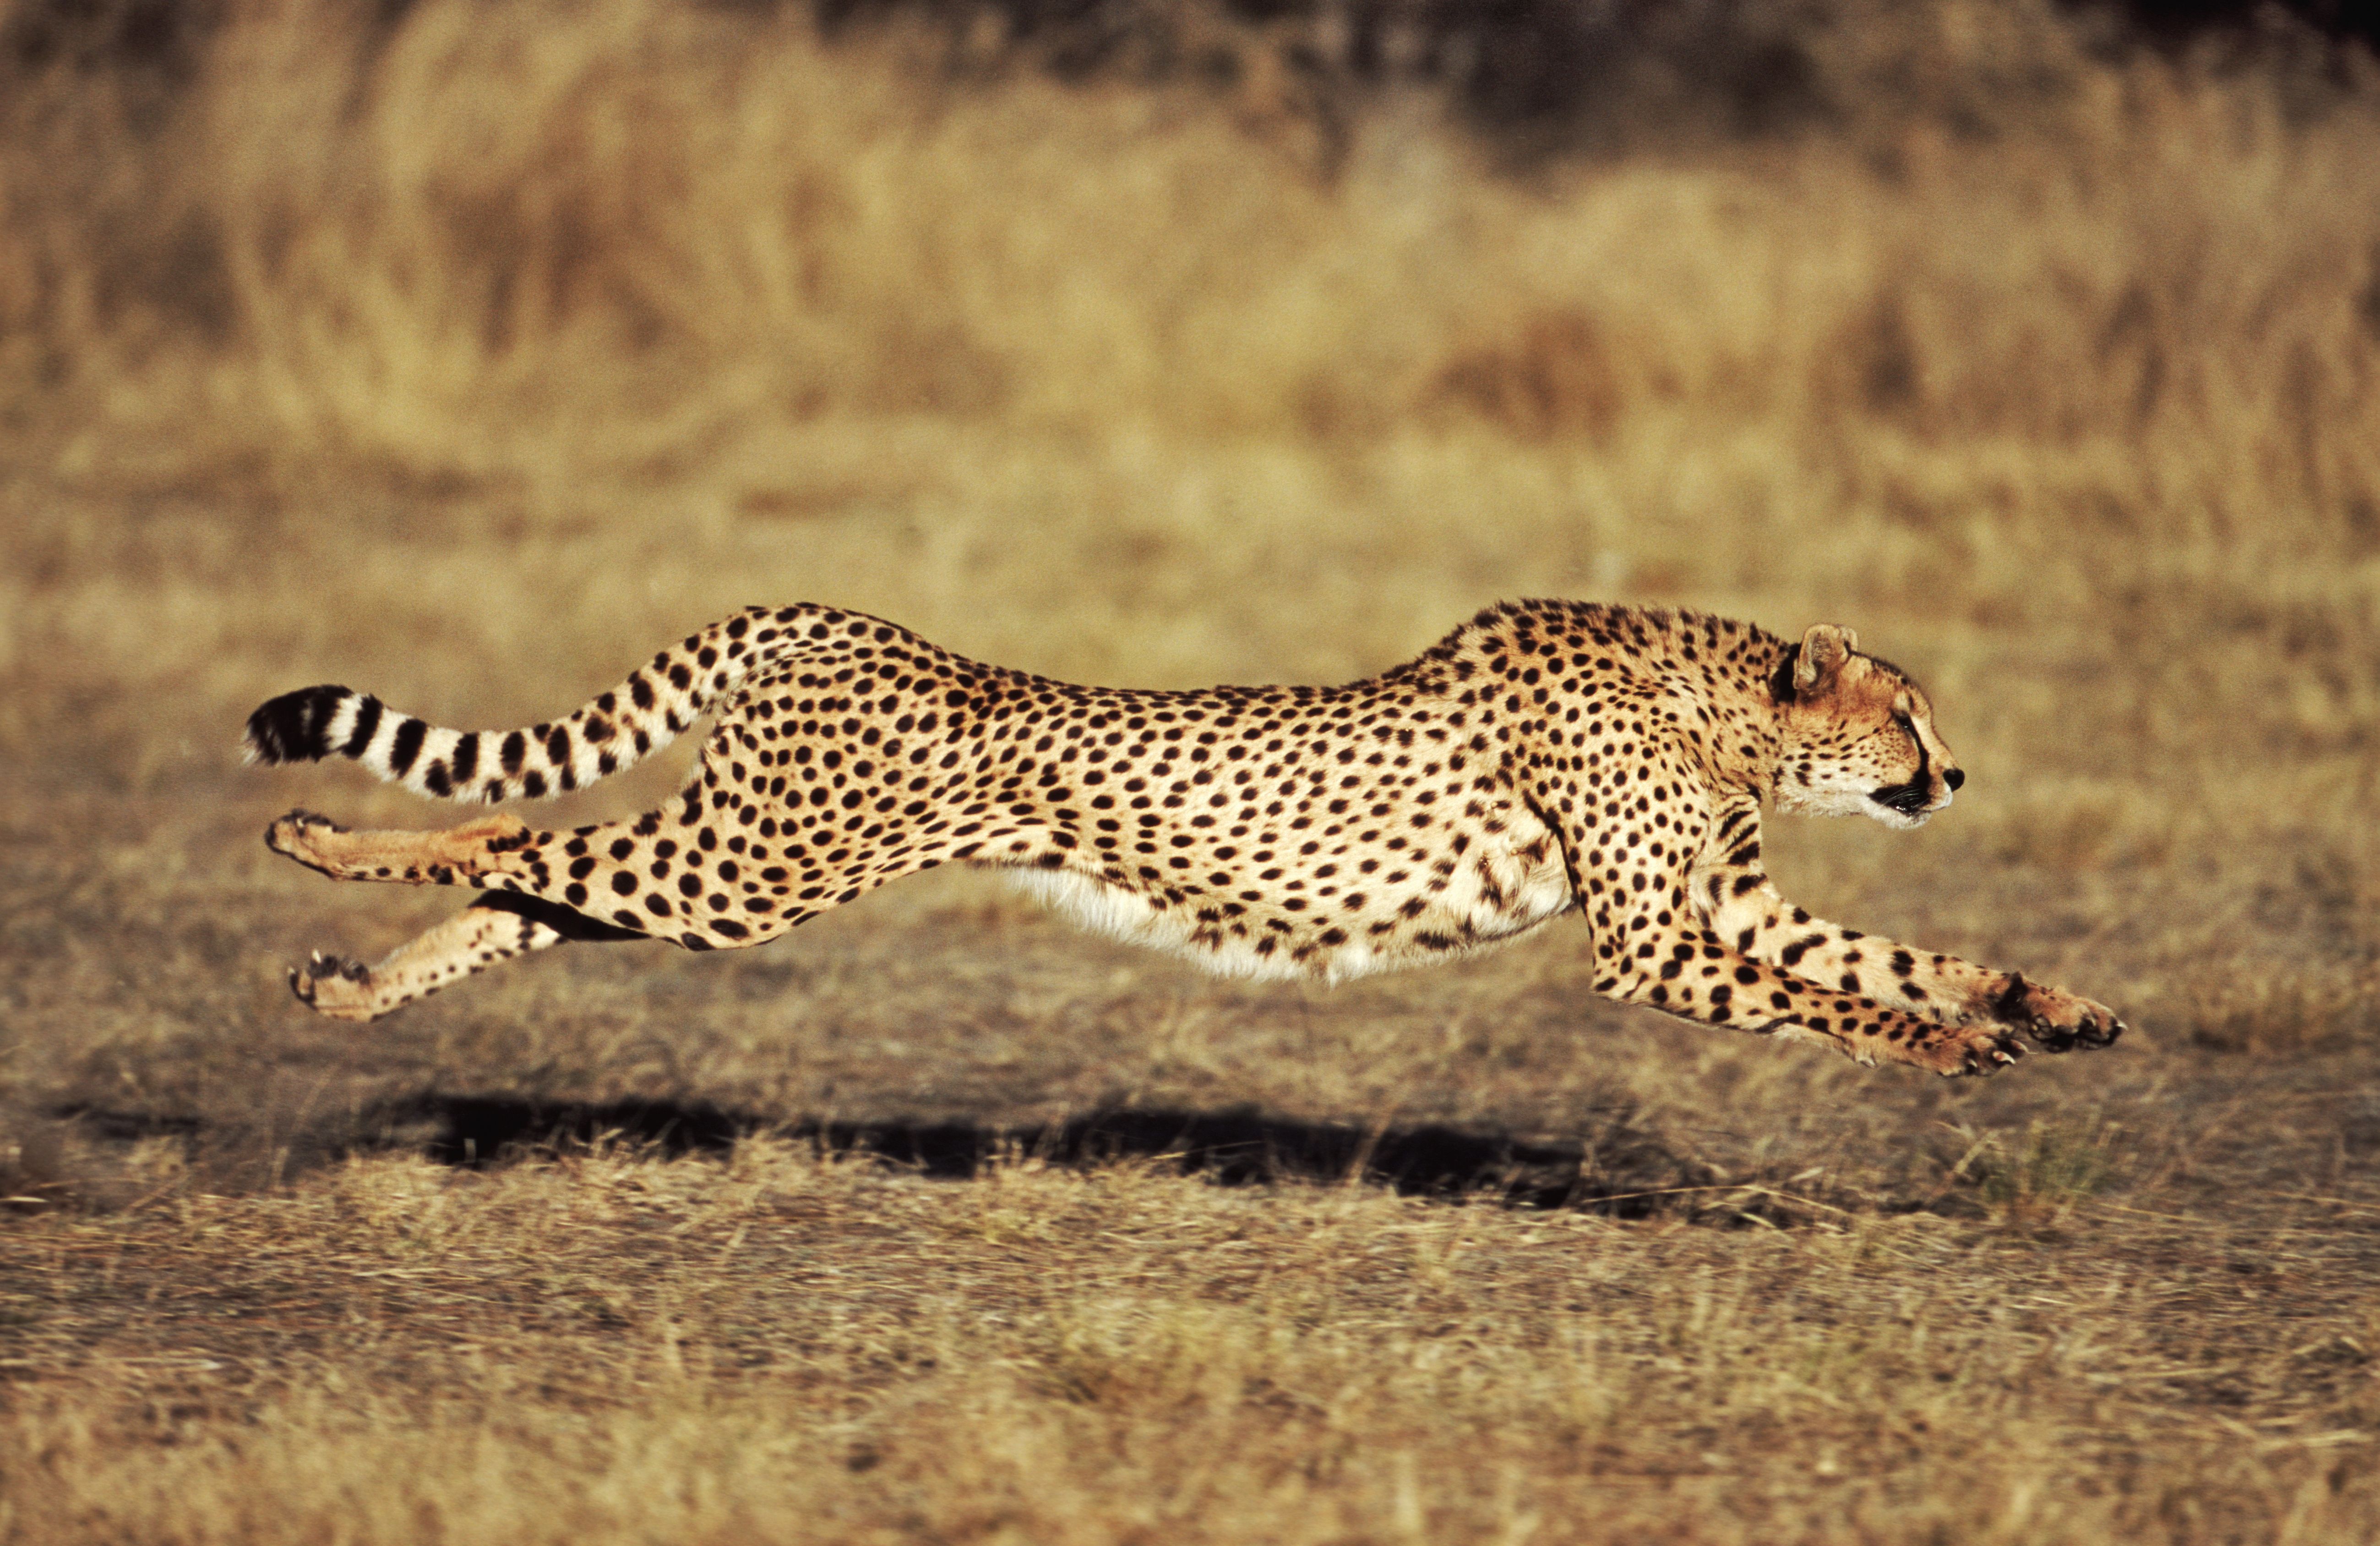 How fast can a Cheetah Run on a safari?